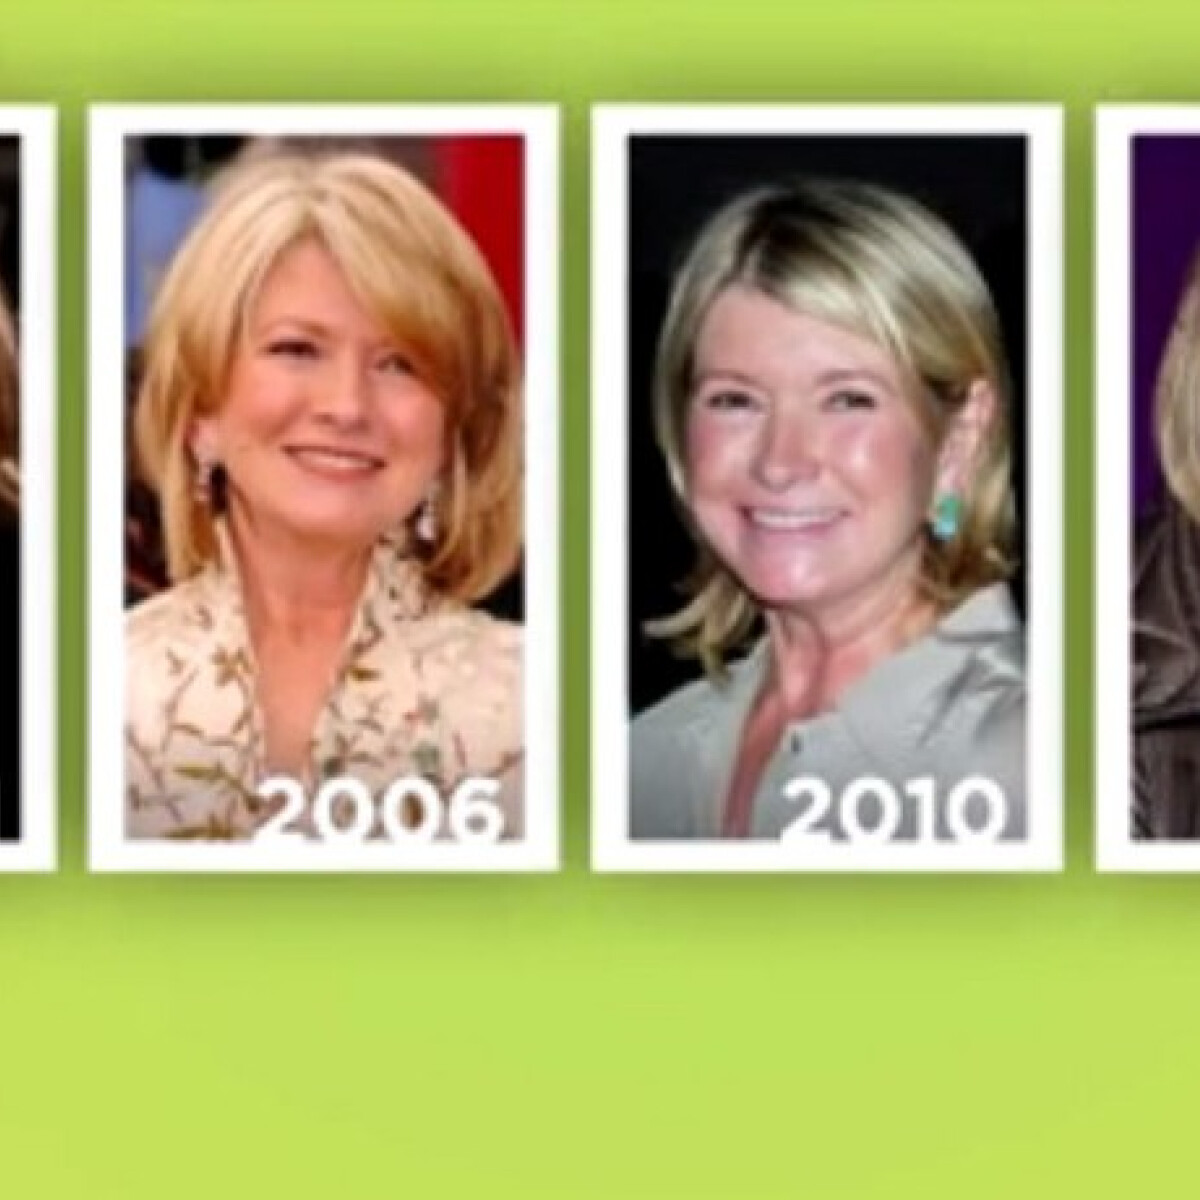 De mégis mit eszik Martha Stewart, hogy 75 évesen 45-nek néz ki?